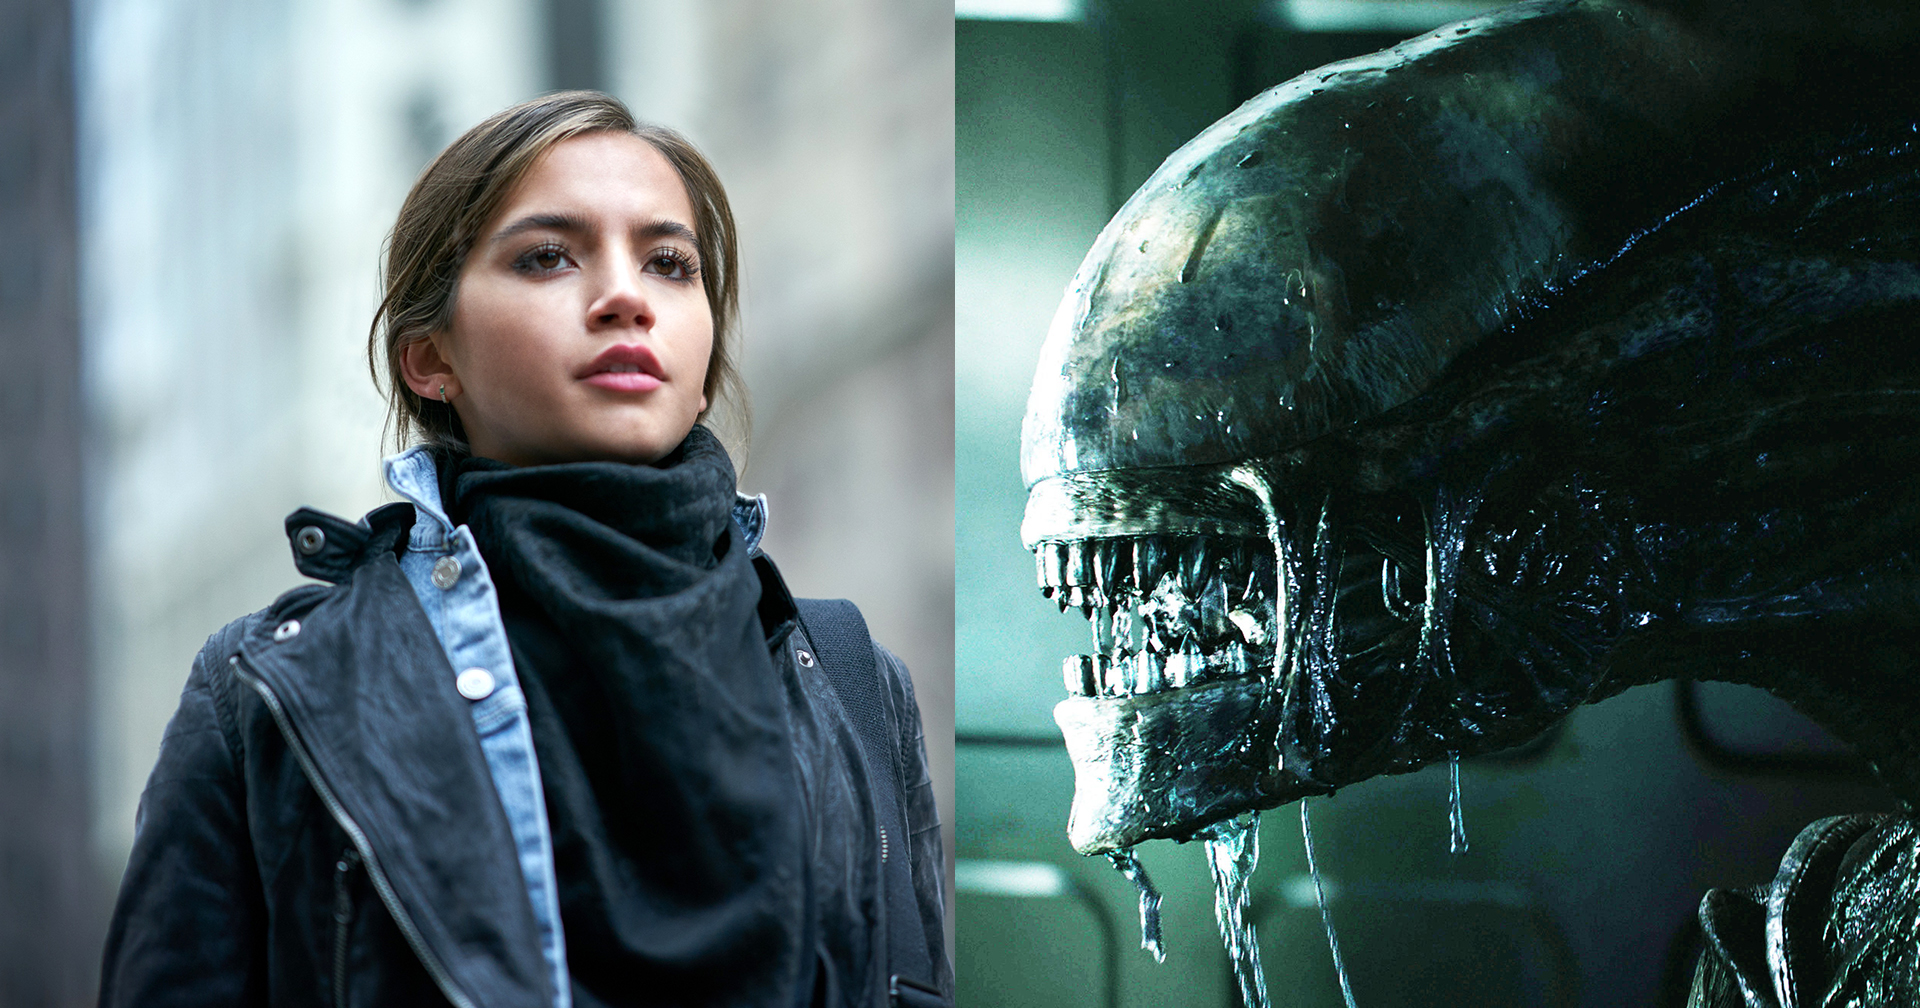 โปรเจกต์หนัง ‘Alien’ ใหม่เดินหน้า: เลือก Isabela Moner จาก ‘Transformers: The Last Knight’ มาร่วมแสดง